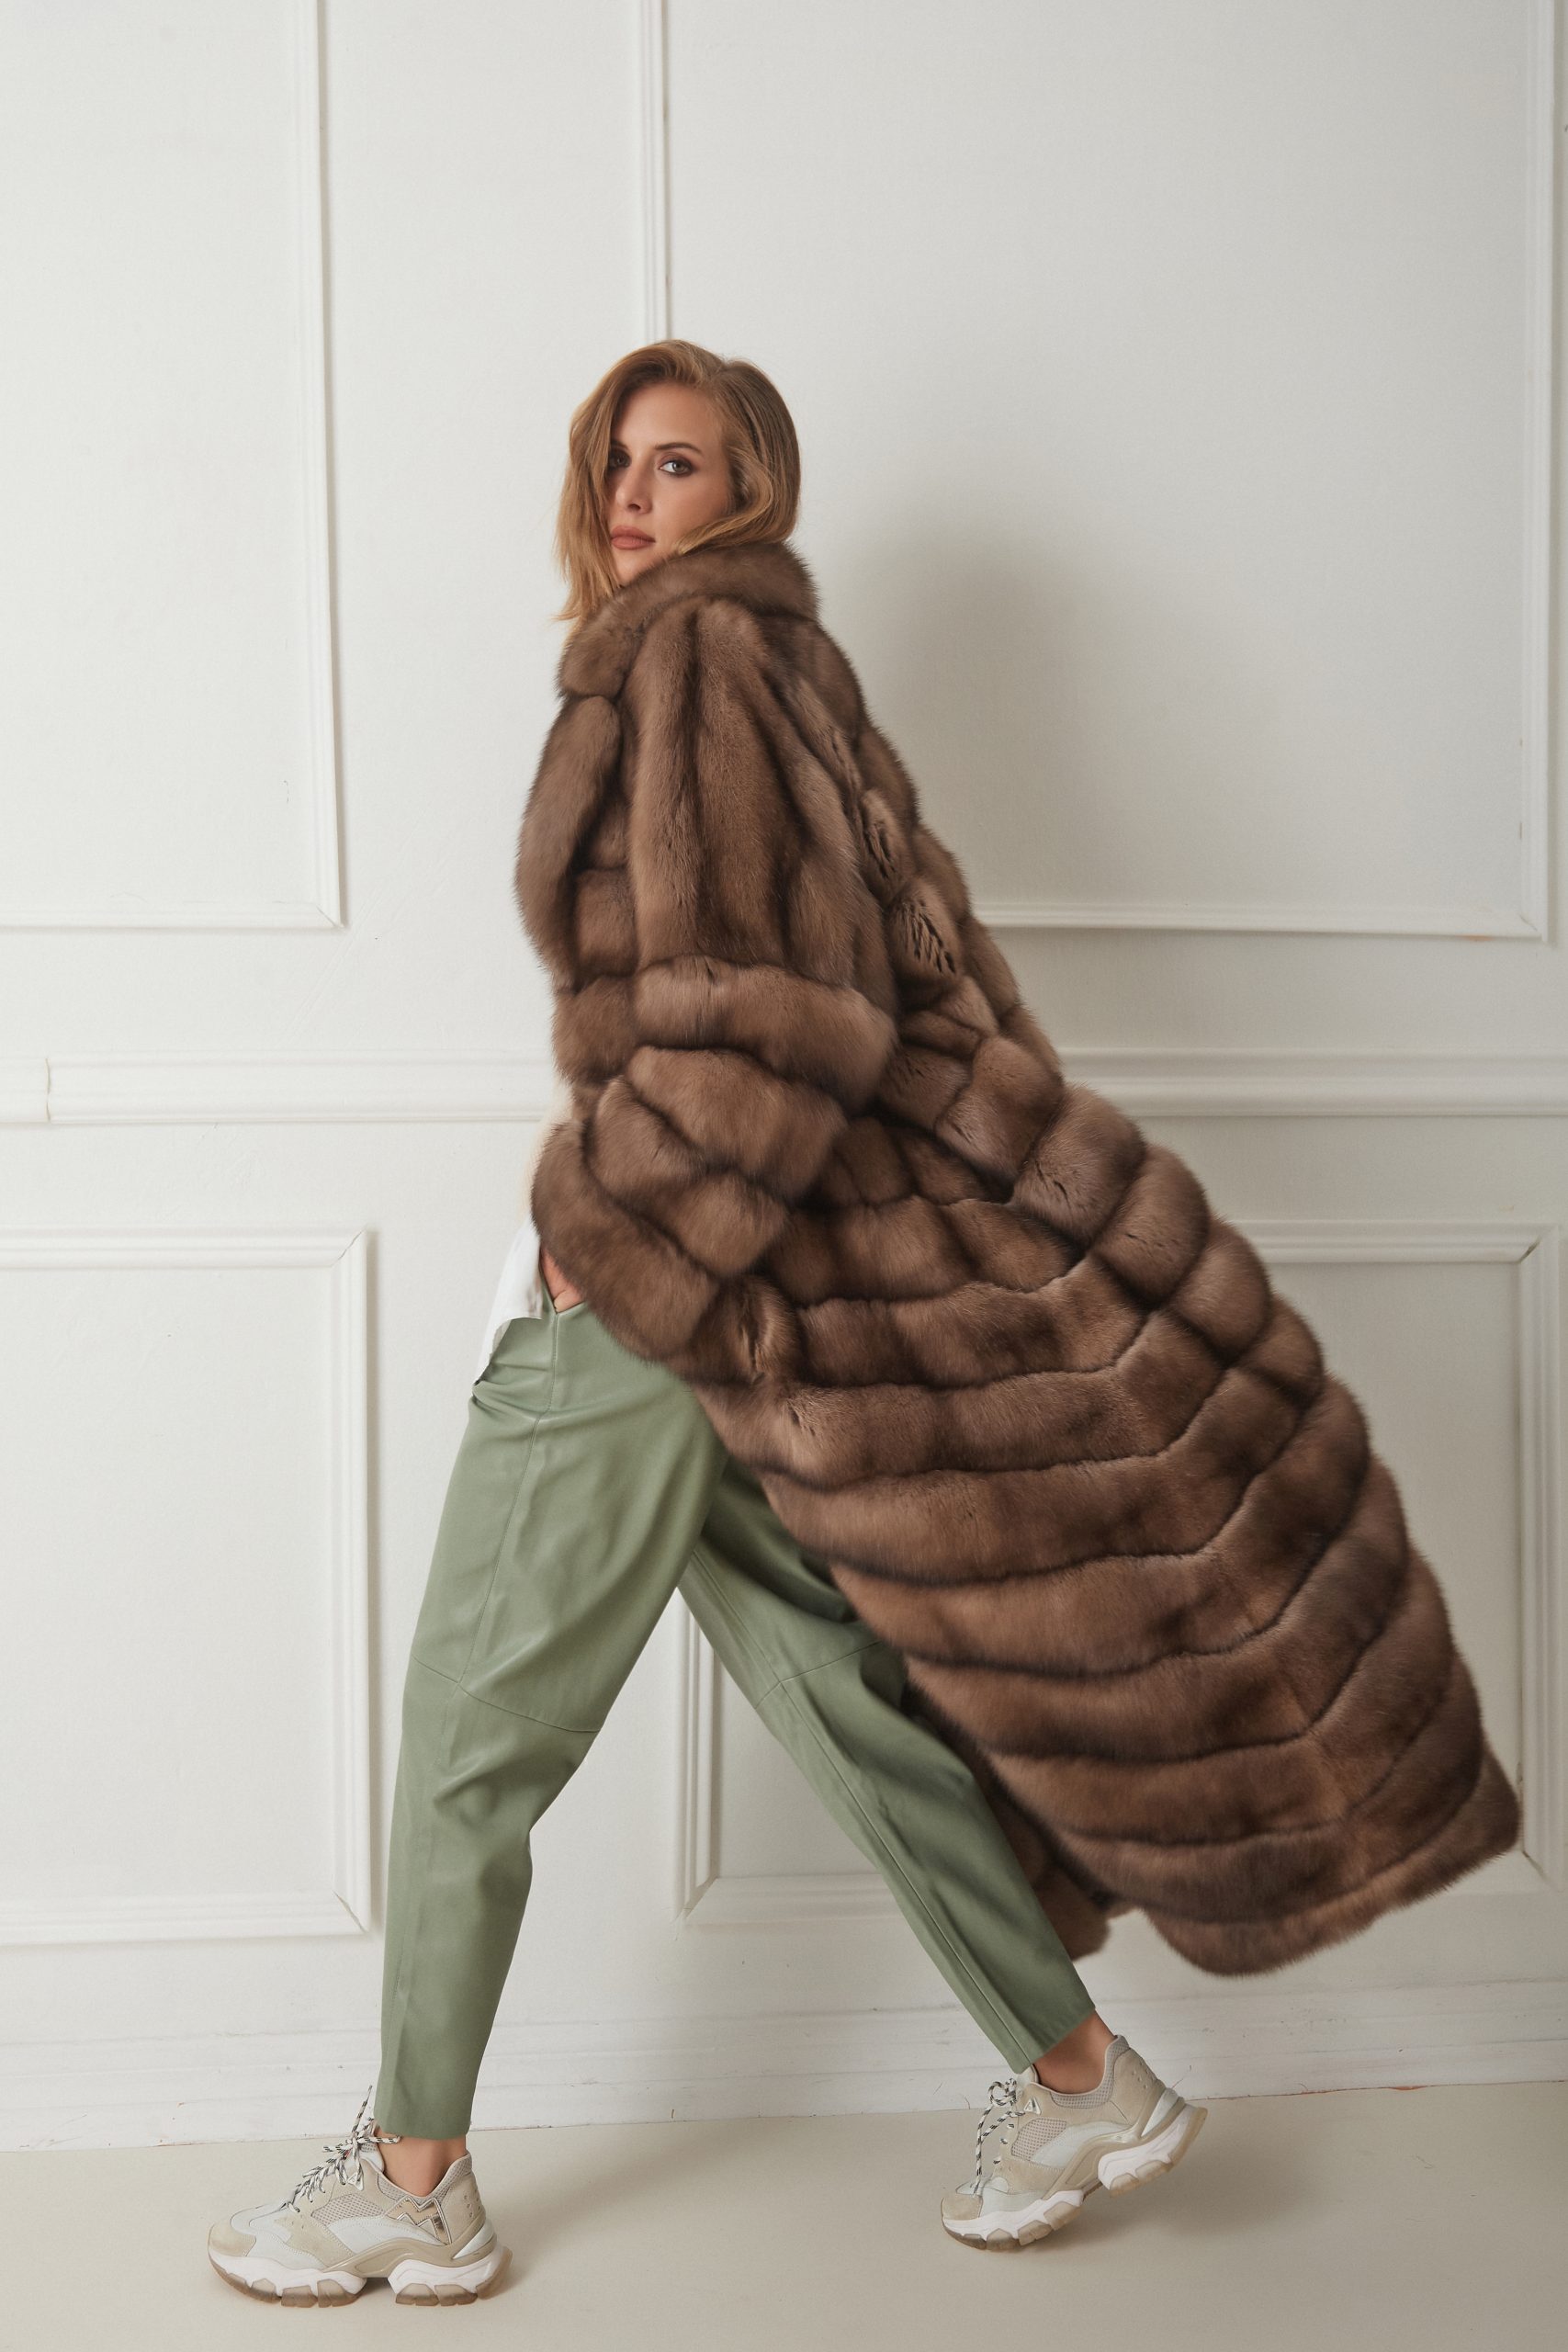 Sable Fur Long Coat